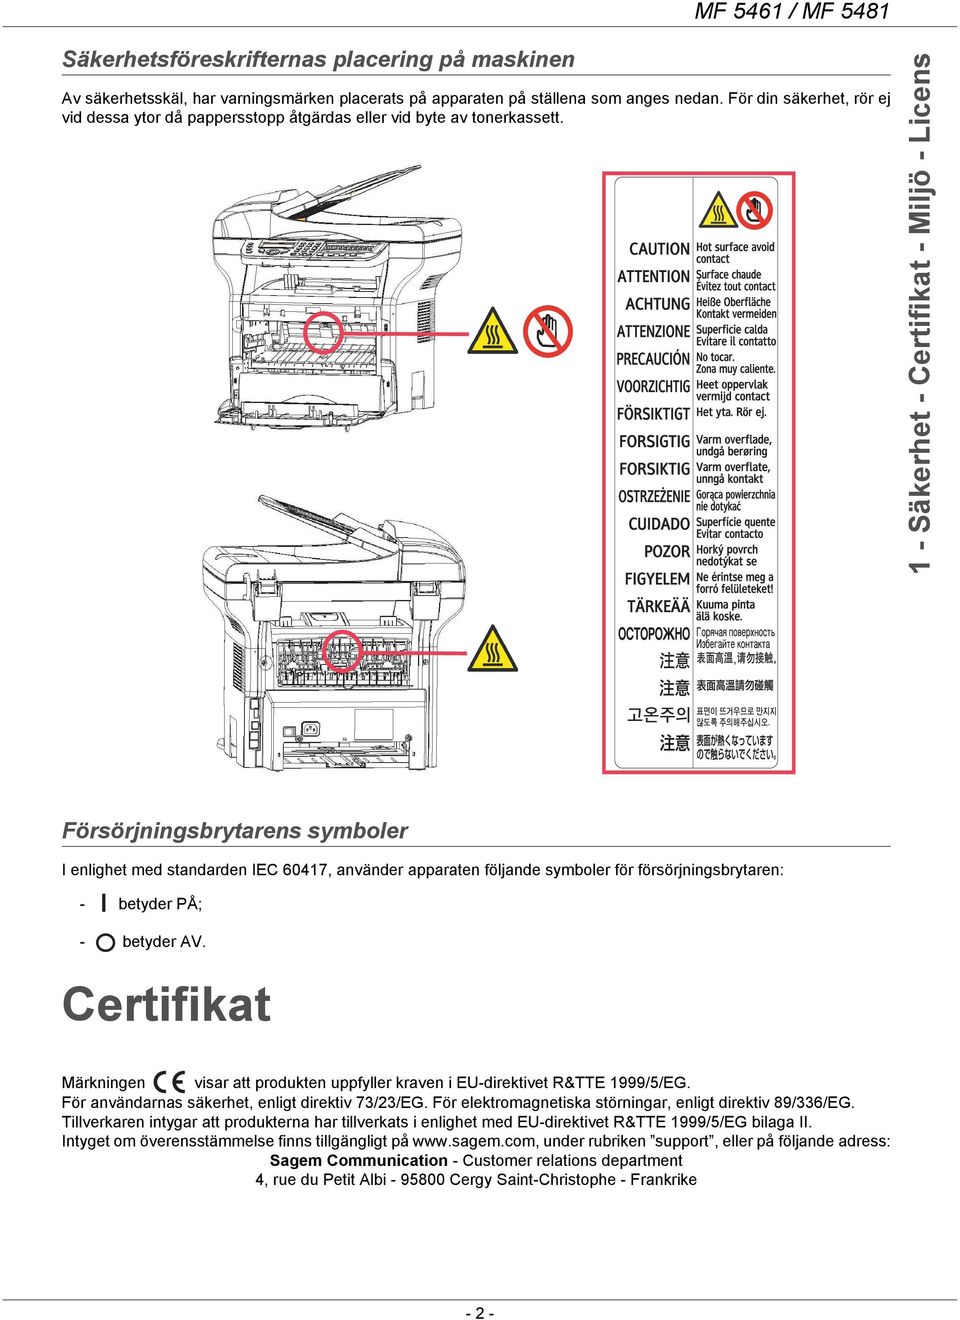 1 - Säkerhet - Certifikat - Miljö - Licens Försörjningsbrytarens symboler I enlighet med standarden IEC 60417, använder apparaten följande symboler för försörjningsbrytaren: - betyder PÅ; - betyder